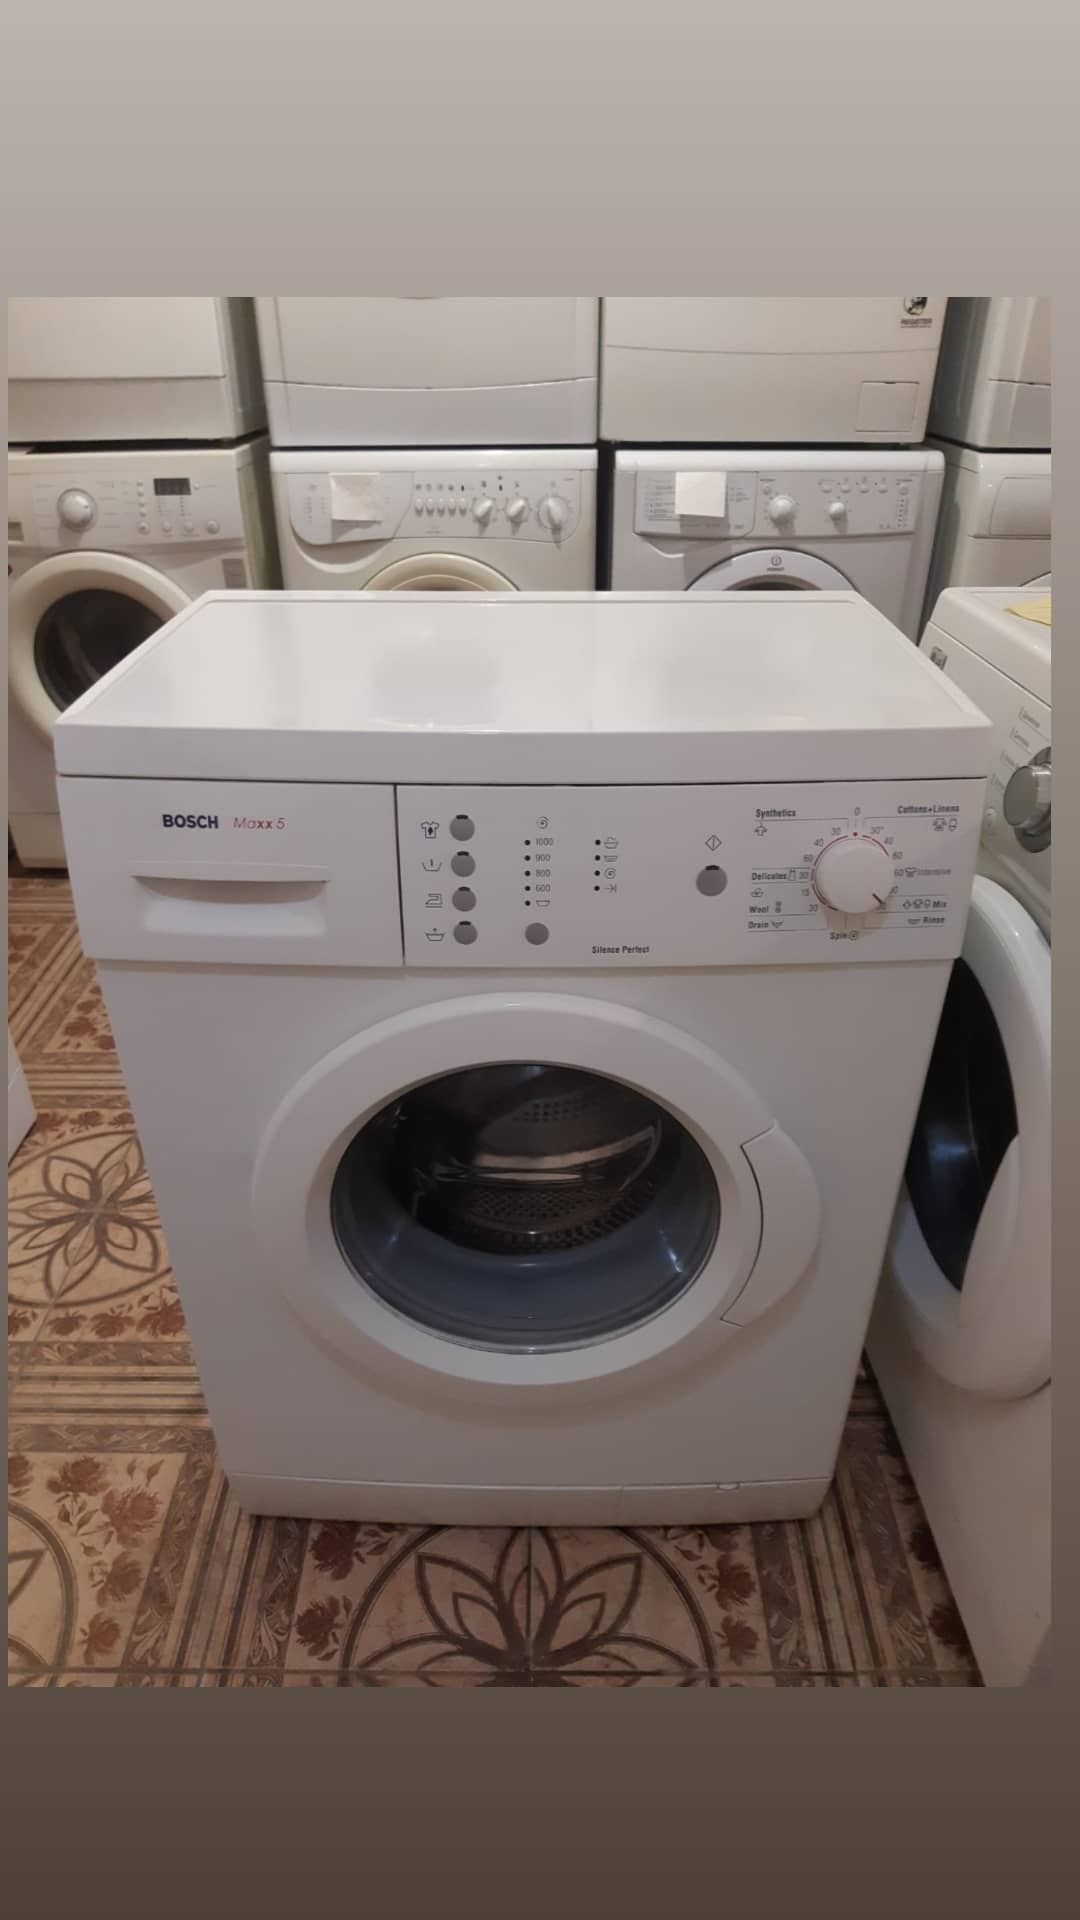 Продам стиральную машинку LG wd 5410 nd